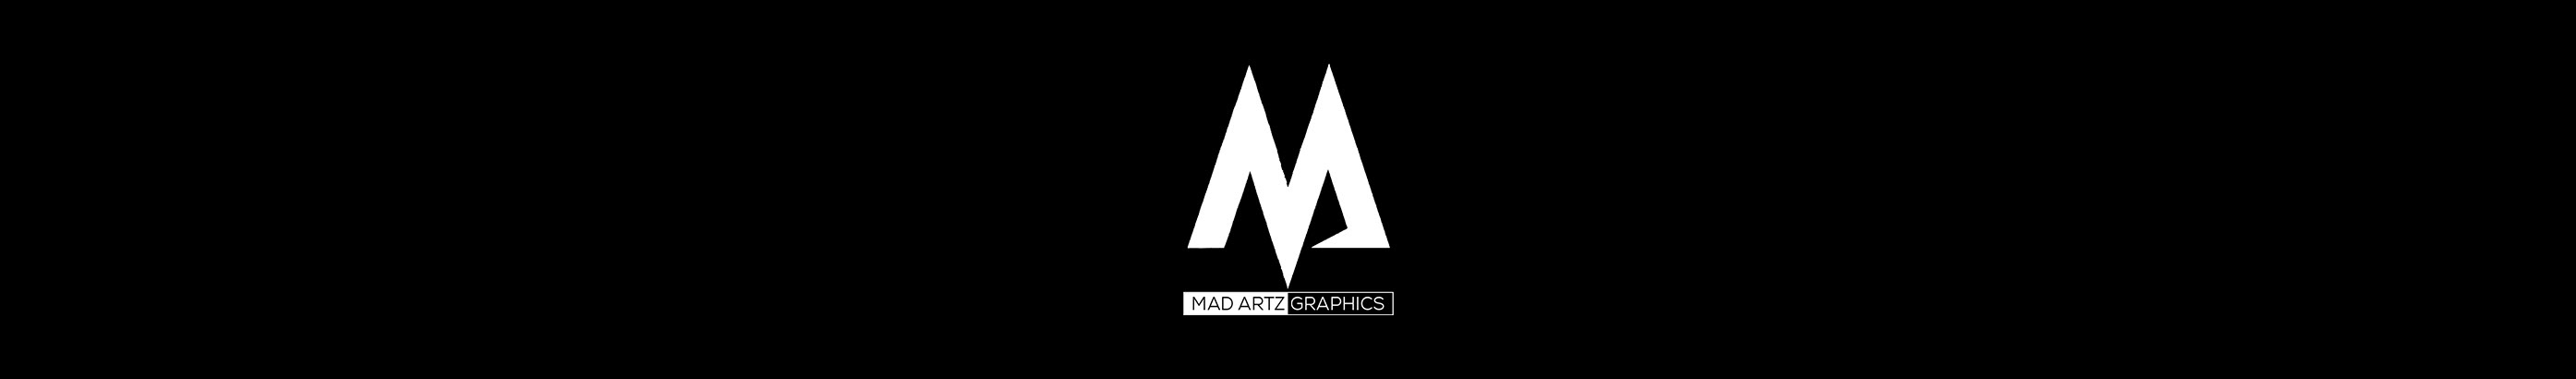 Mad Artz Graphics's profile banner